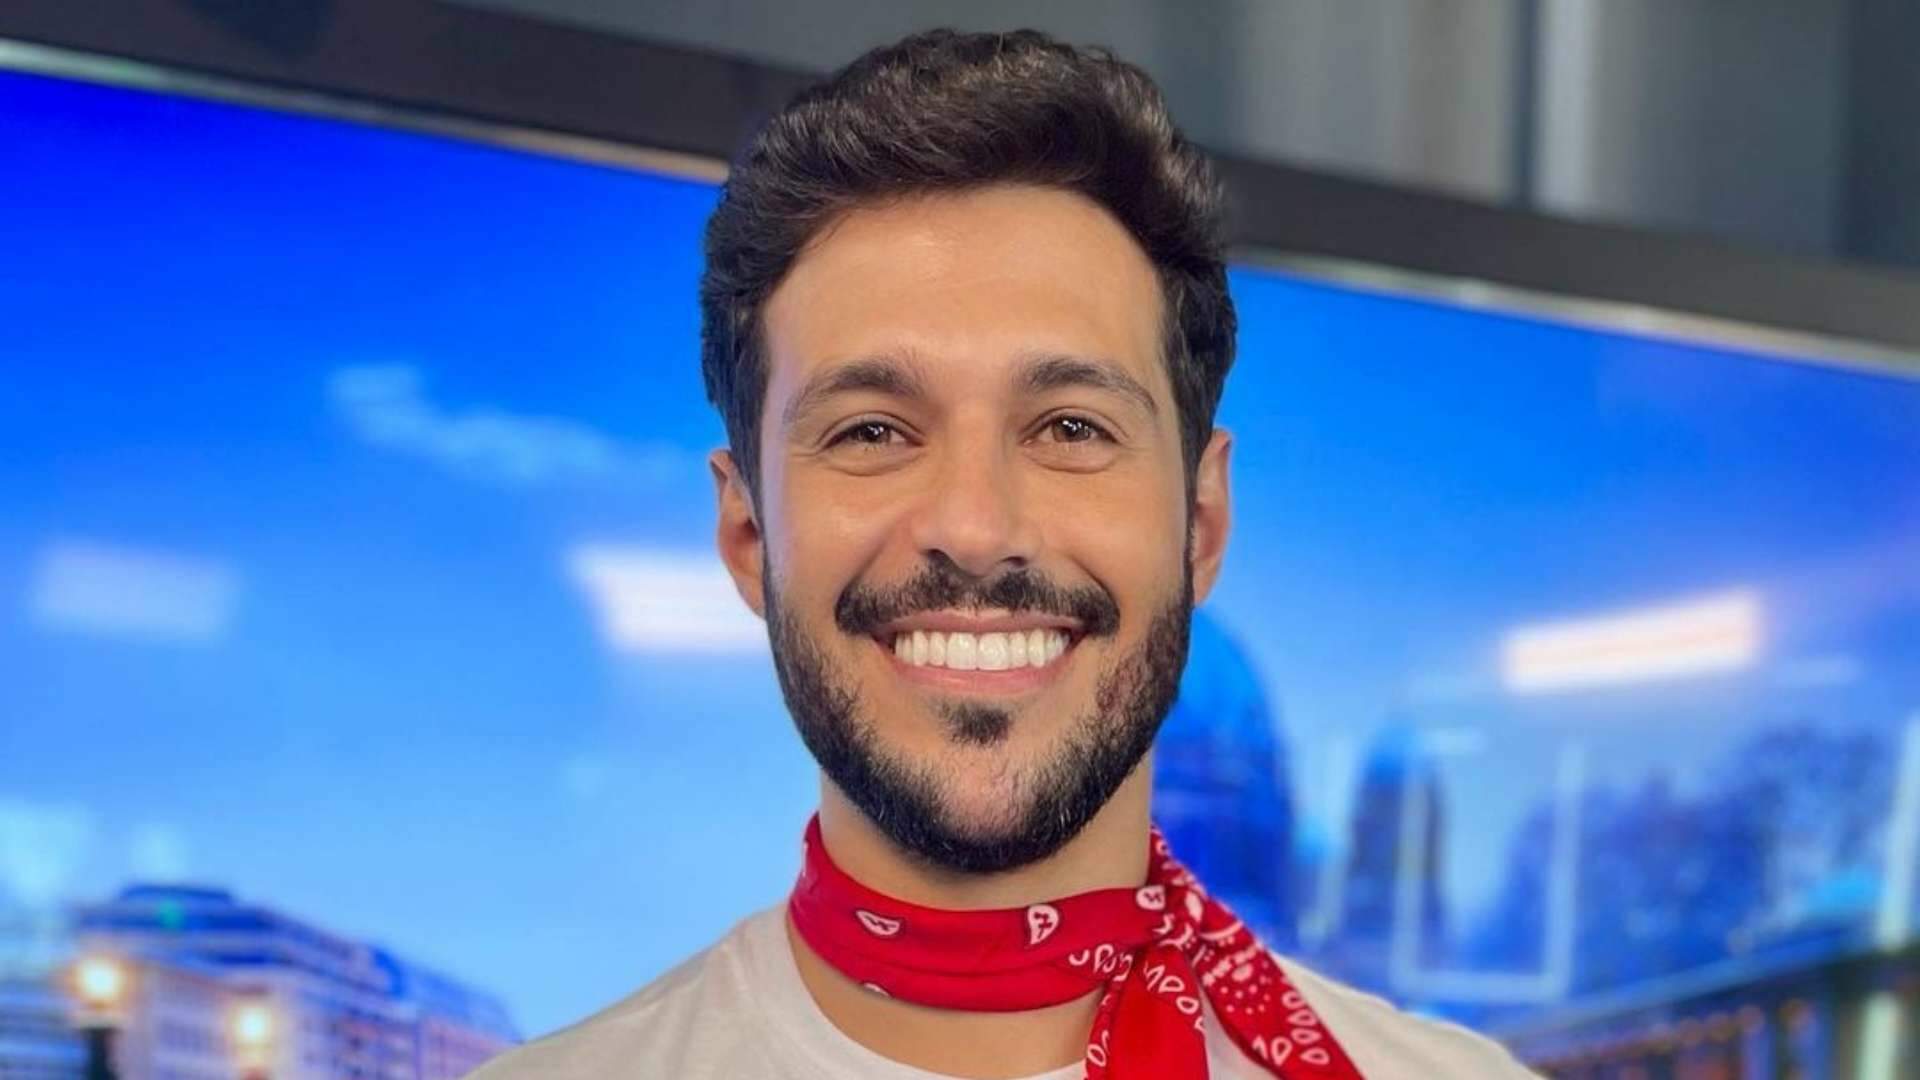 Rodrigo Mussi fará sua primeira aparição pública e explica escolha do local: “Sempre quis conhecer” - Metropolitana FM